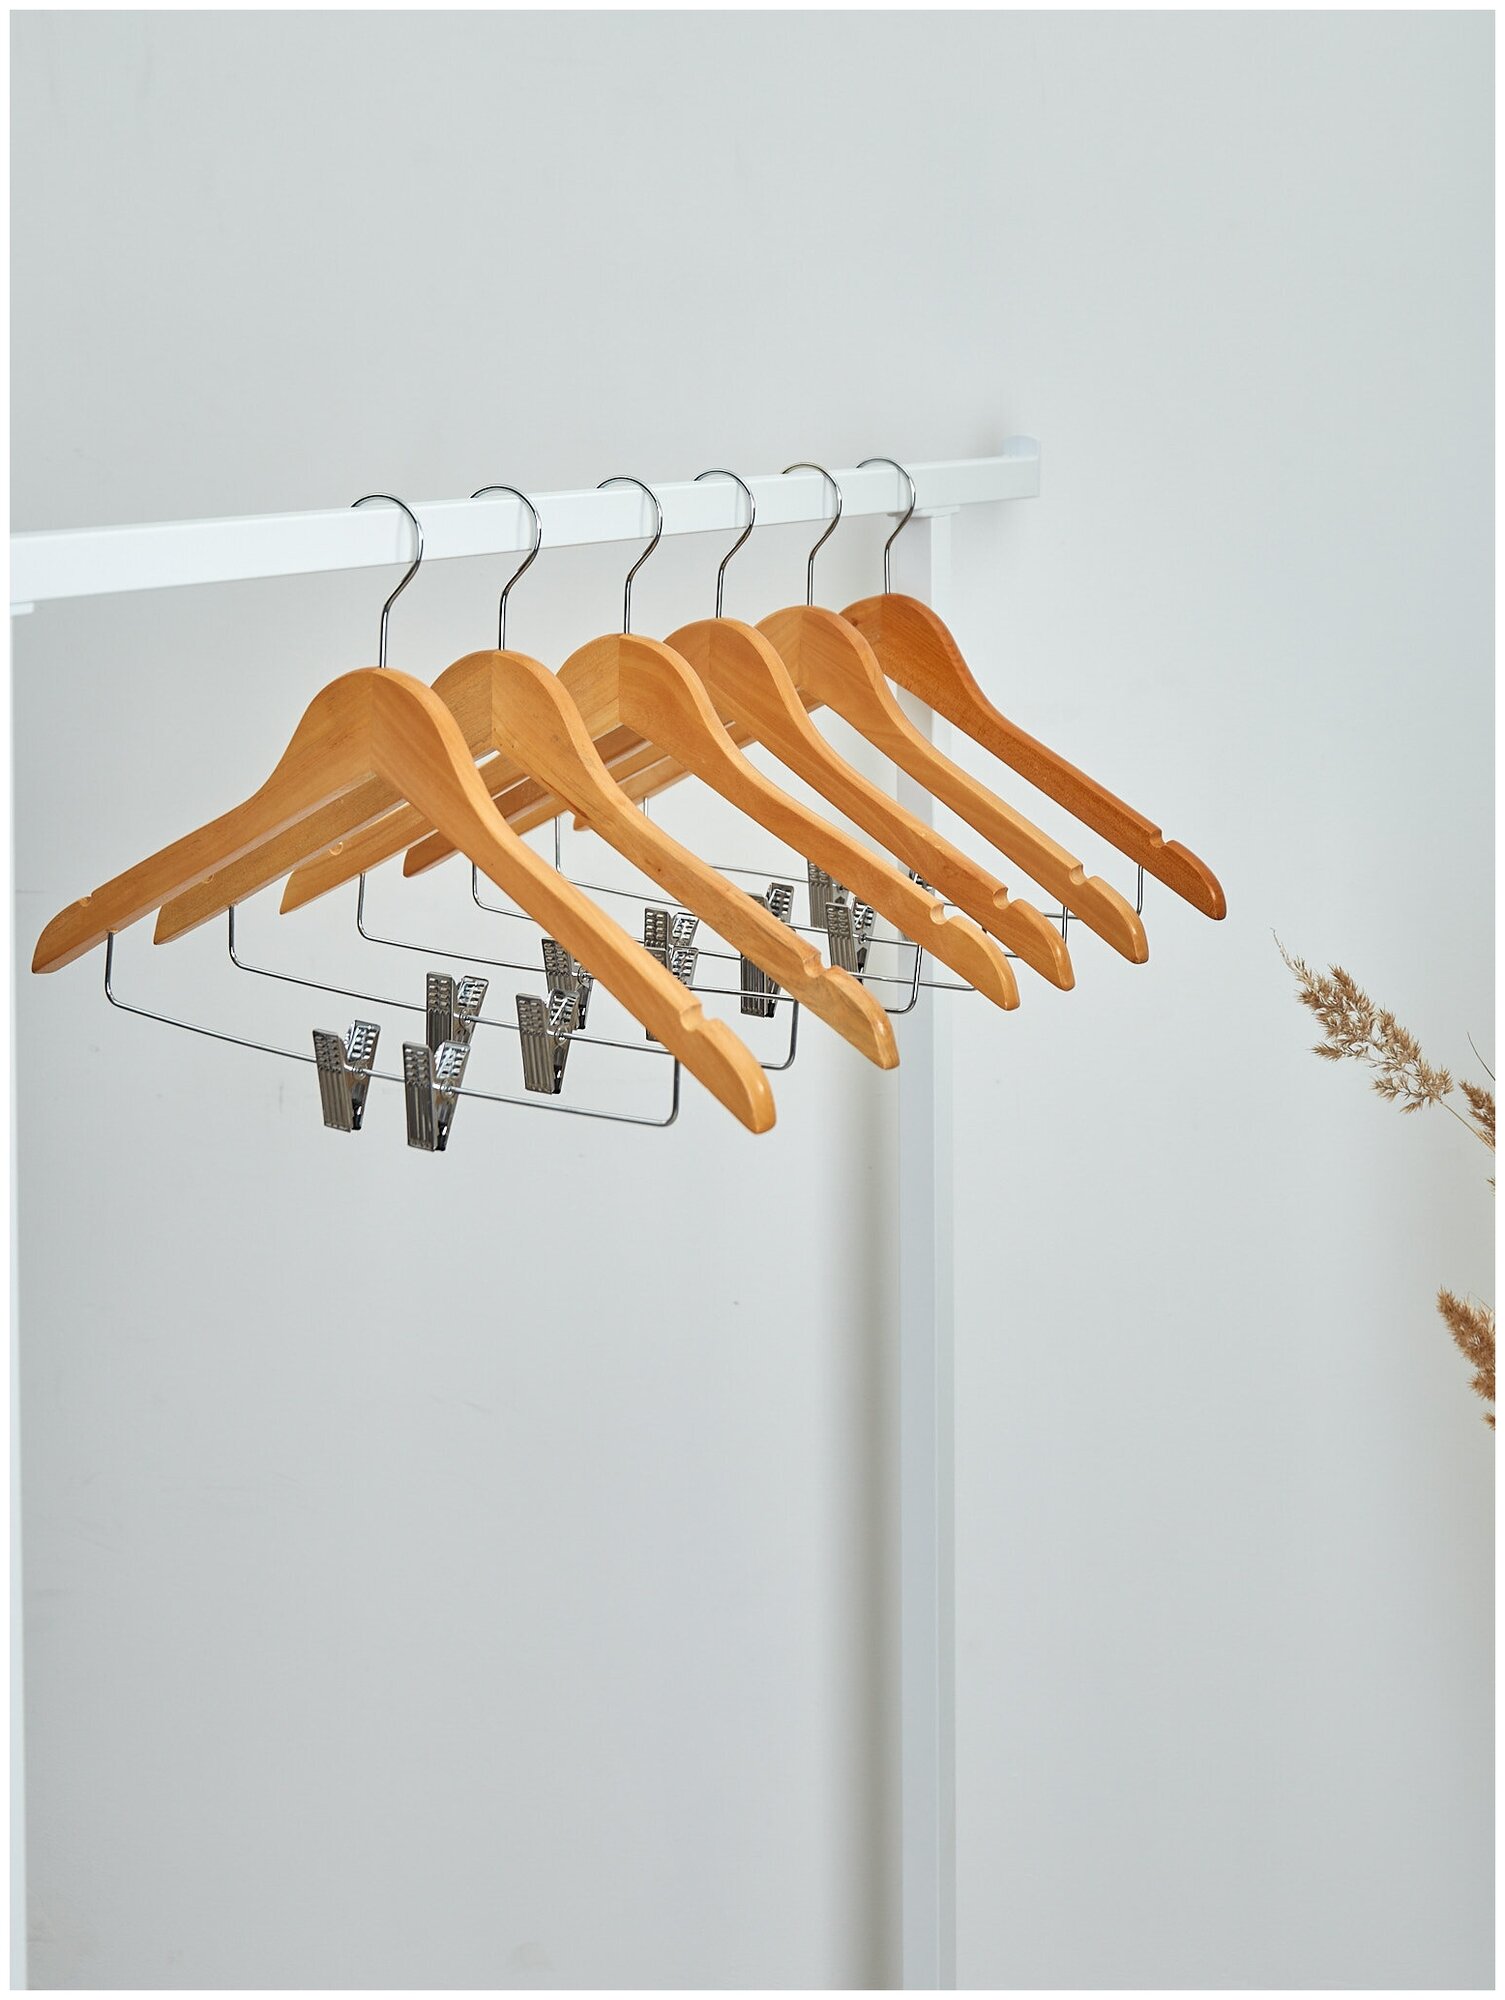 Вешалки-плечики для одежды, костюма, брюк и юбок с прищепками (зажимами) деревянные, L-45 см, цвет светлое дерево, комплект 3 штуки